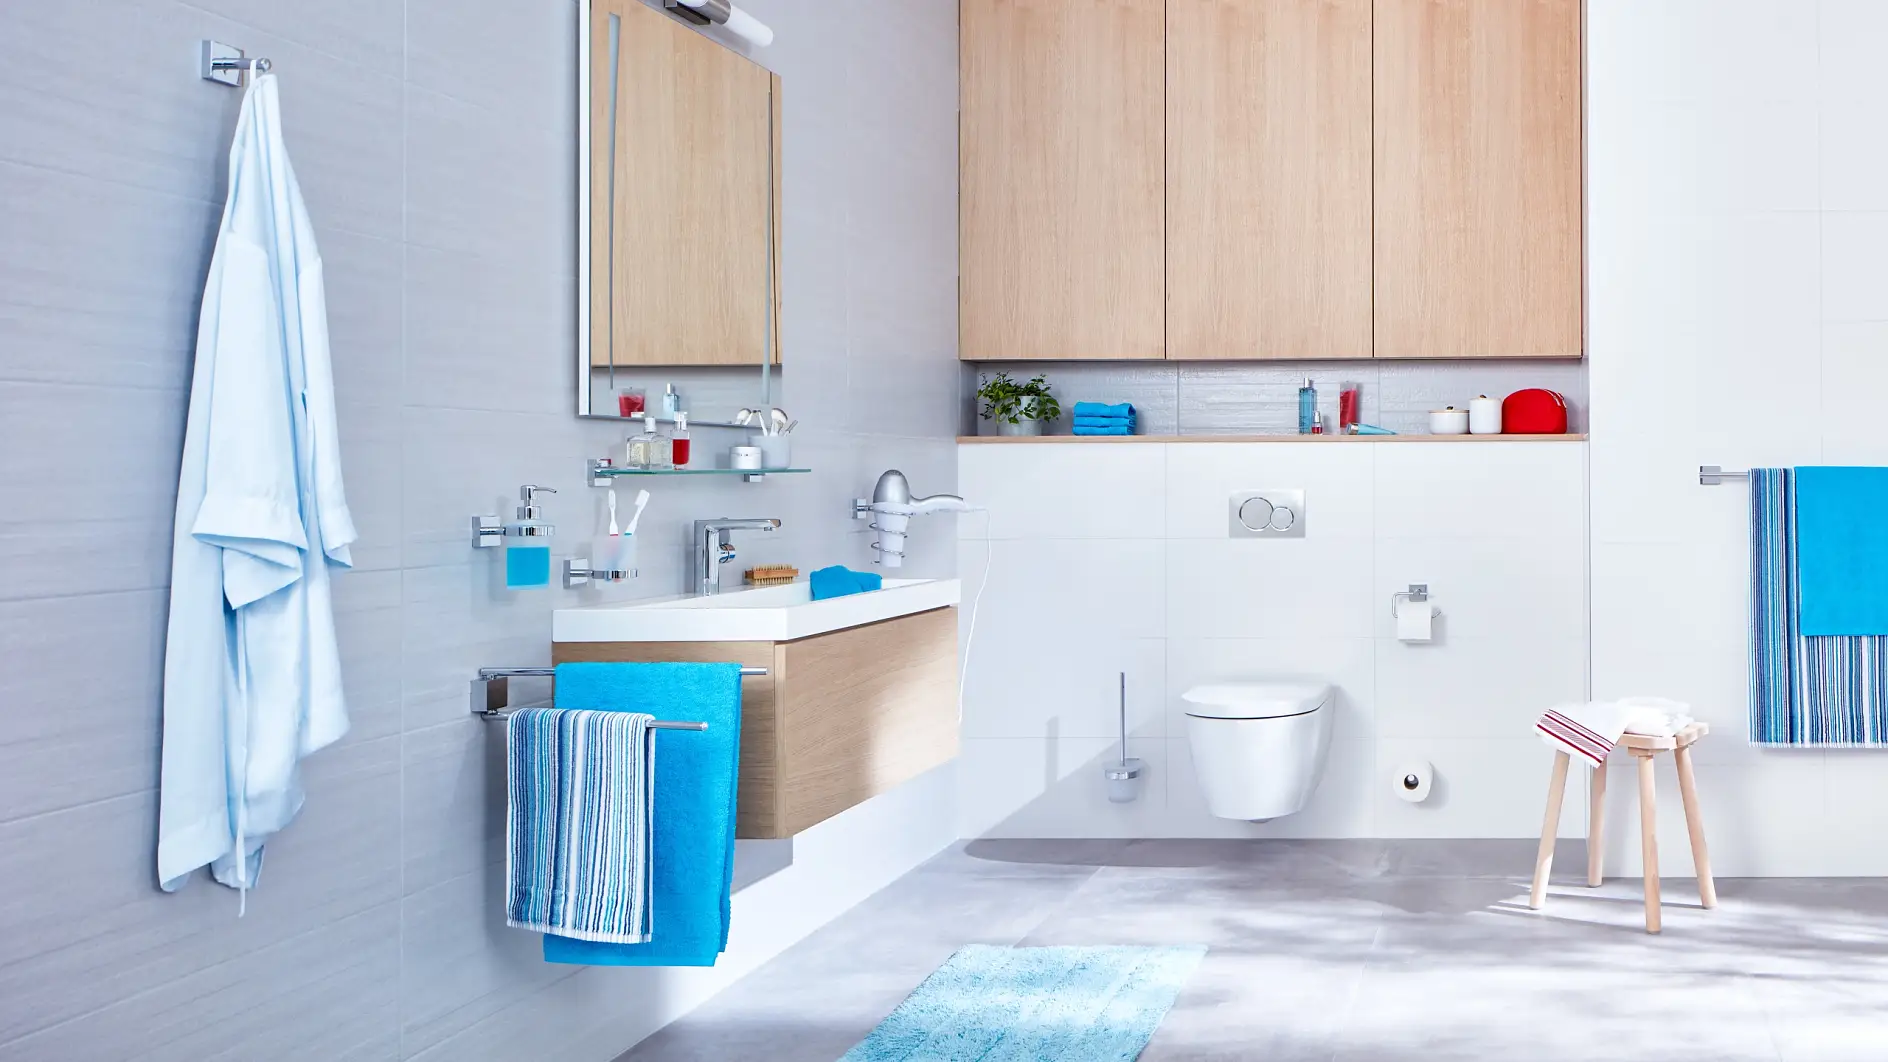 Design pulito e strutture lineari per un’esperienza bagno organizzata.